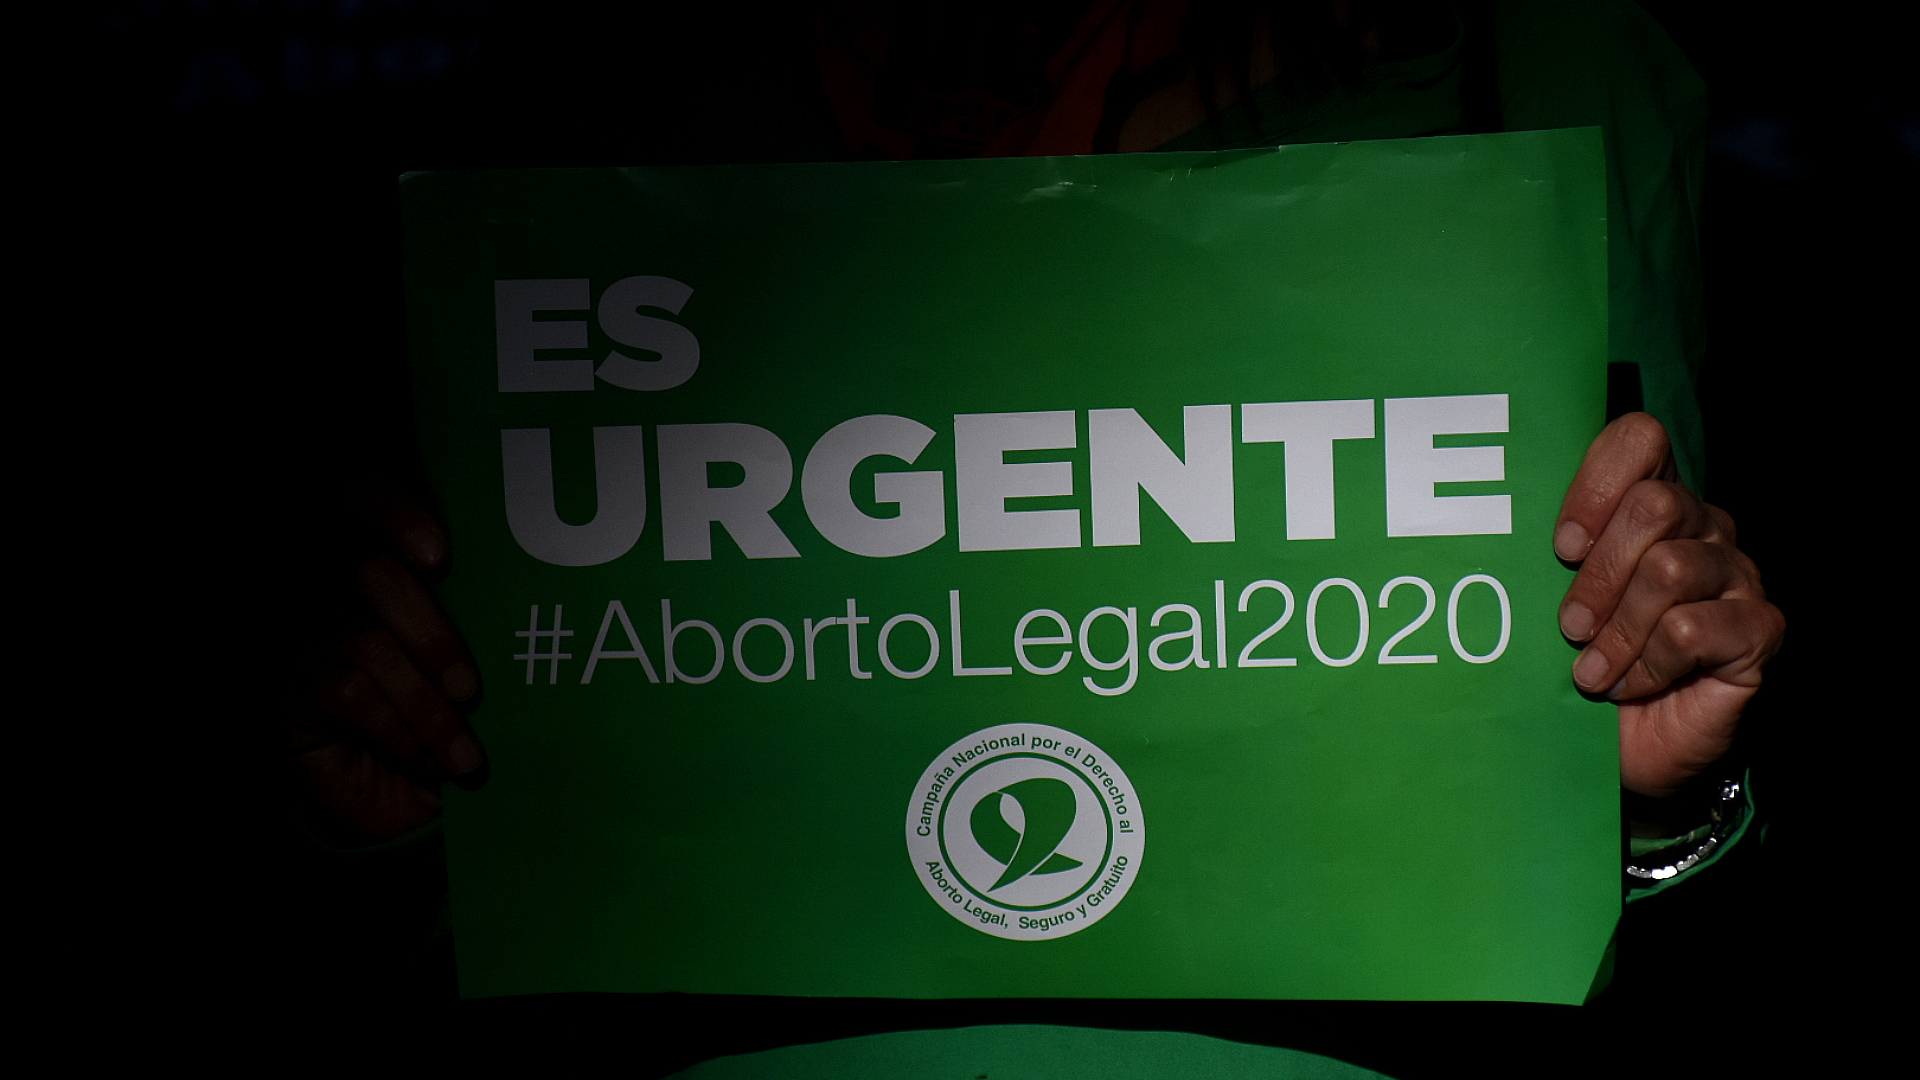 "Es urgente, aborto legal 2020", reclamaron este año desde los feminismos (Nicolás Stulberg)